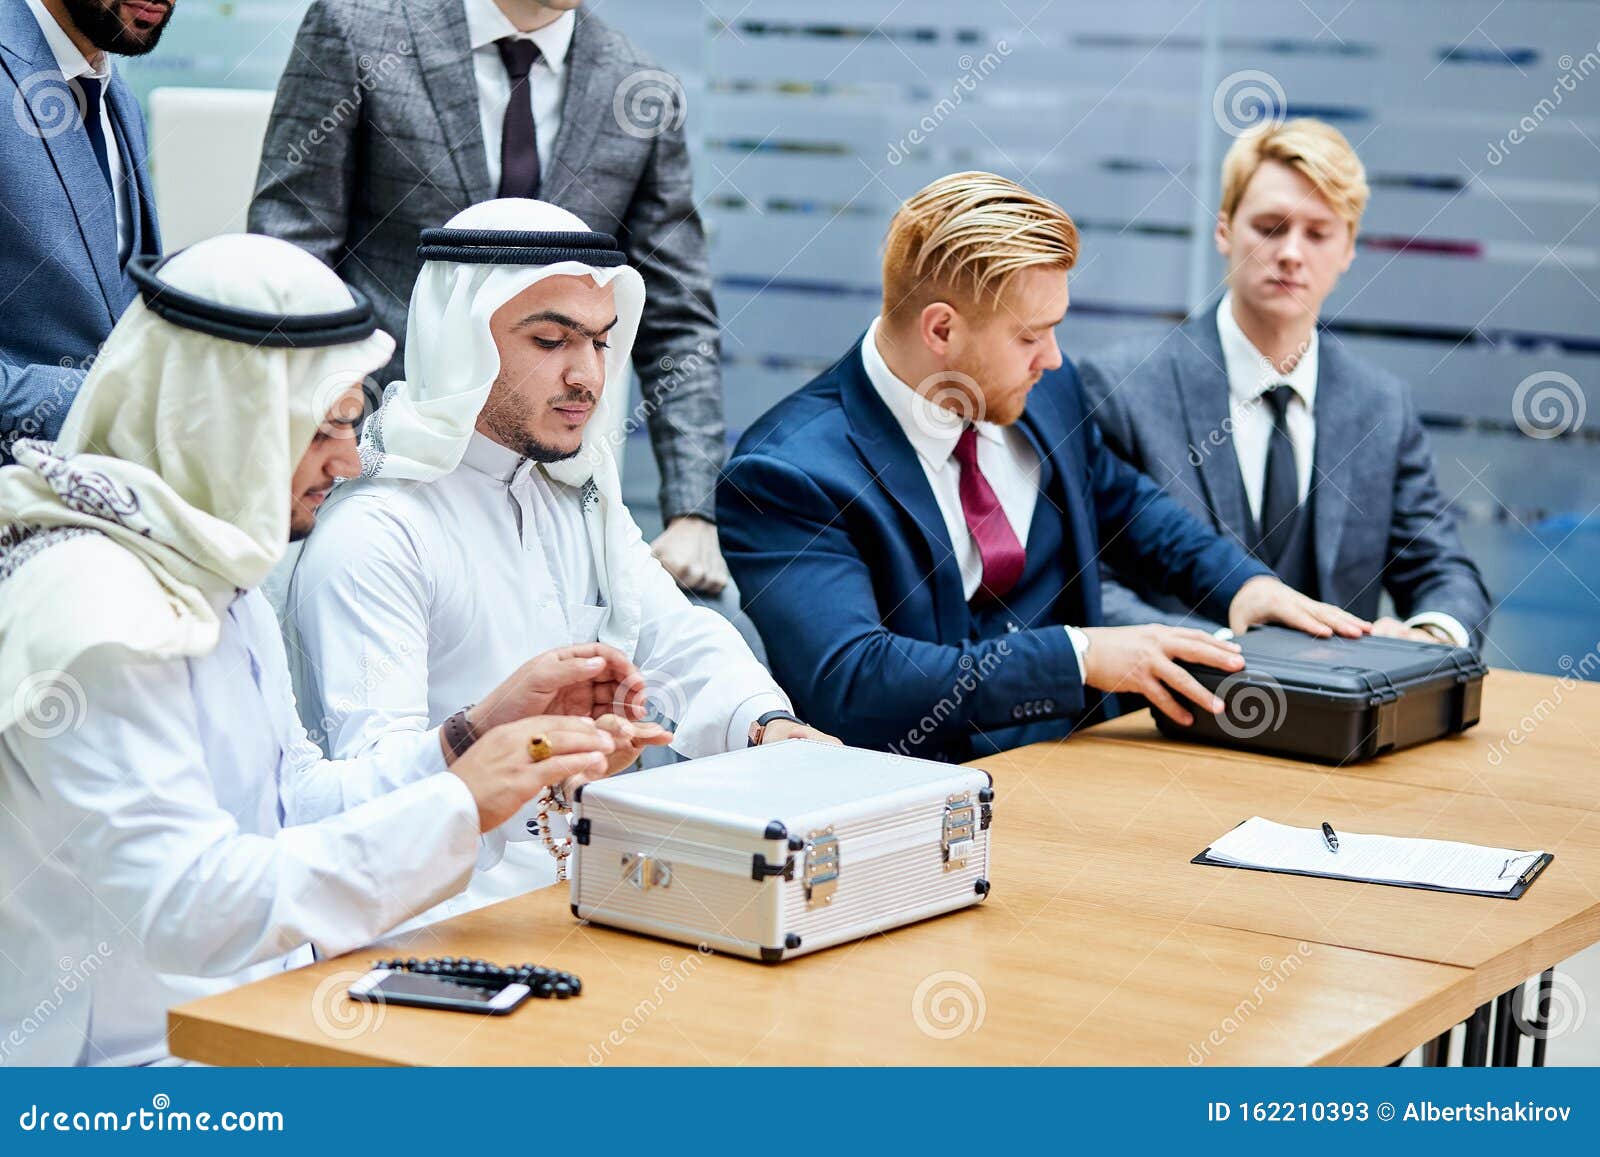 Conceito De Empresa Árabes E Caucasianos Imagem de Stock - Imagem